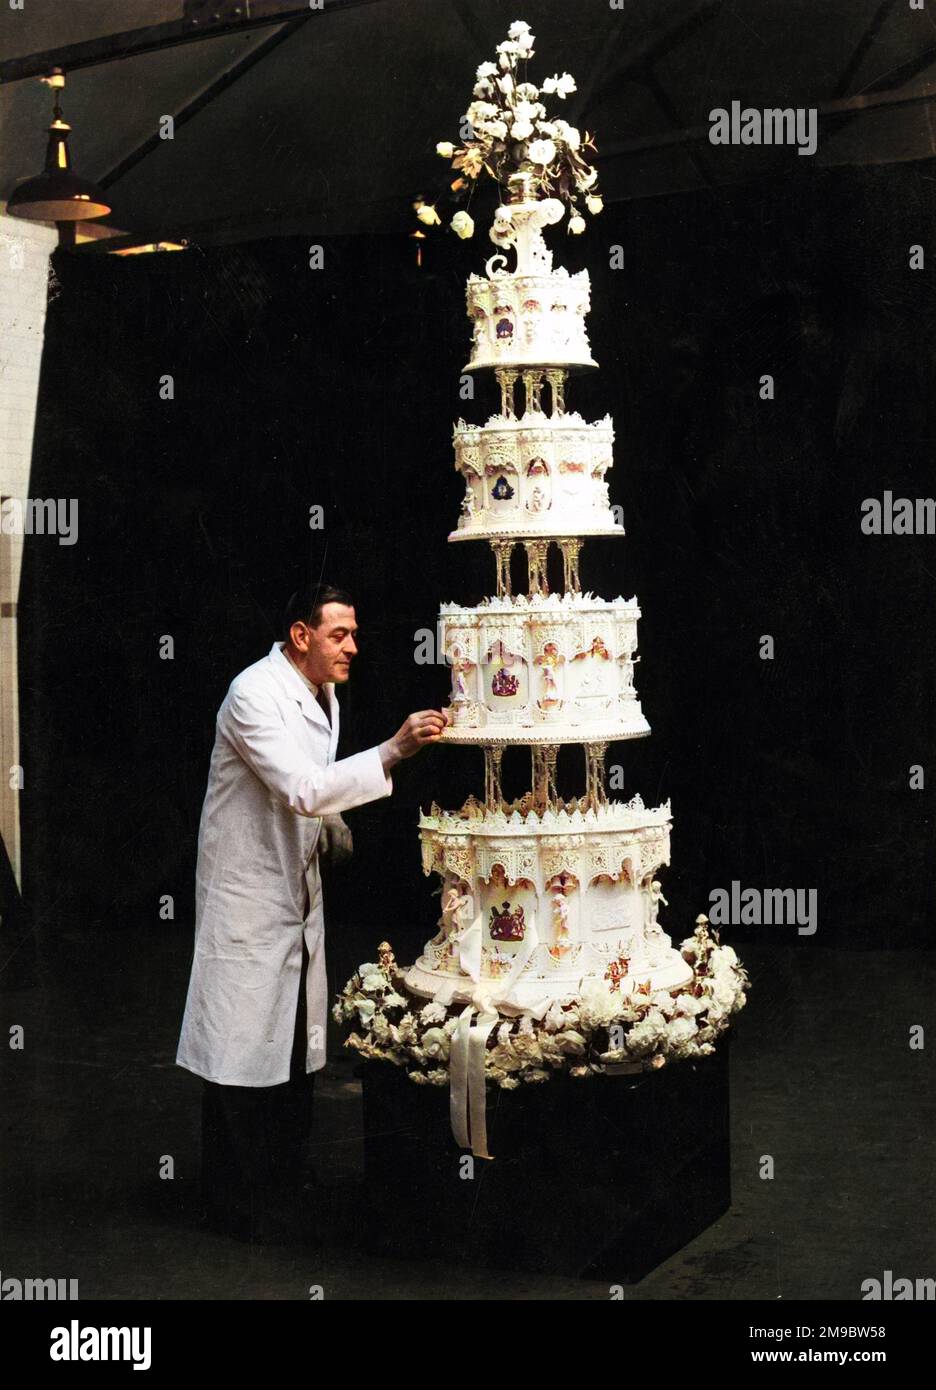 Gâteau de mariage fait par M. F. Schul de McVitie et Price à Harlesden, Londres pour le mariage de la princesse Elizabeth au lieutenant Philip Mountbatten en novembre 1947. Mesurant 9 pieds de haut et 500lb de poids, le gâteau à quatre niveaux se tenait en état pour être photographié, gardé par la police, les chaînes et M. Schul lui-même. Tous les ingrédients du gâteau, qui a pris dix heures à cuire, venaient des dominions. La décoration a pris quatre à cinq semaines. L'image montre M. Schul ajoutant les touches de finition au gâteau. Banque D'Images